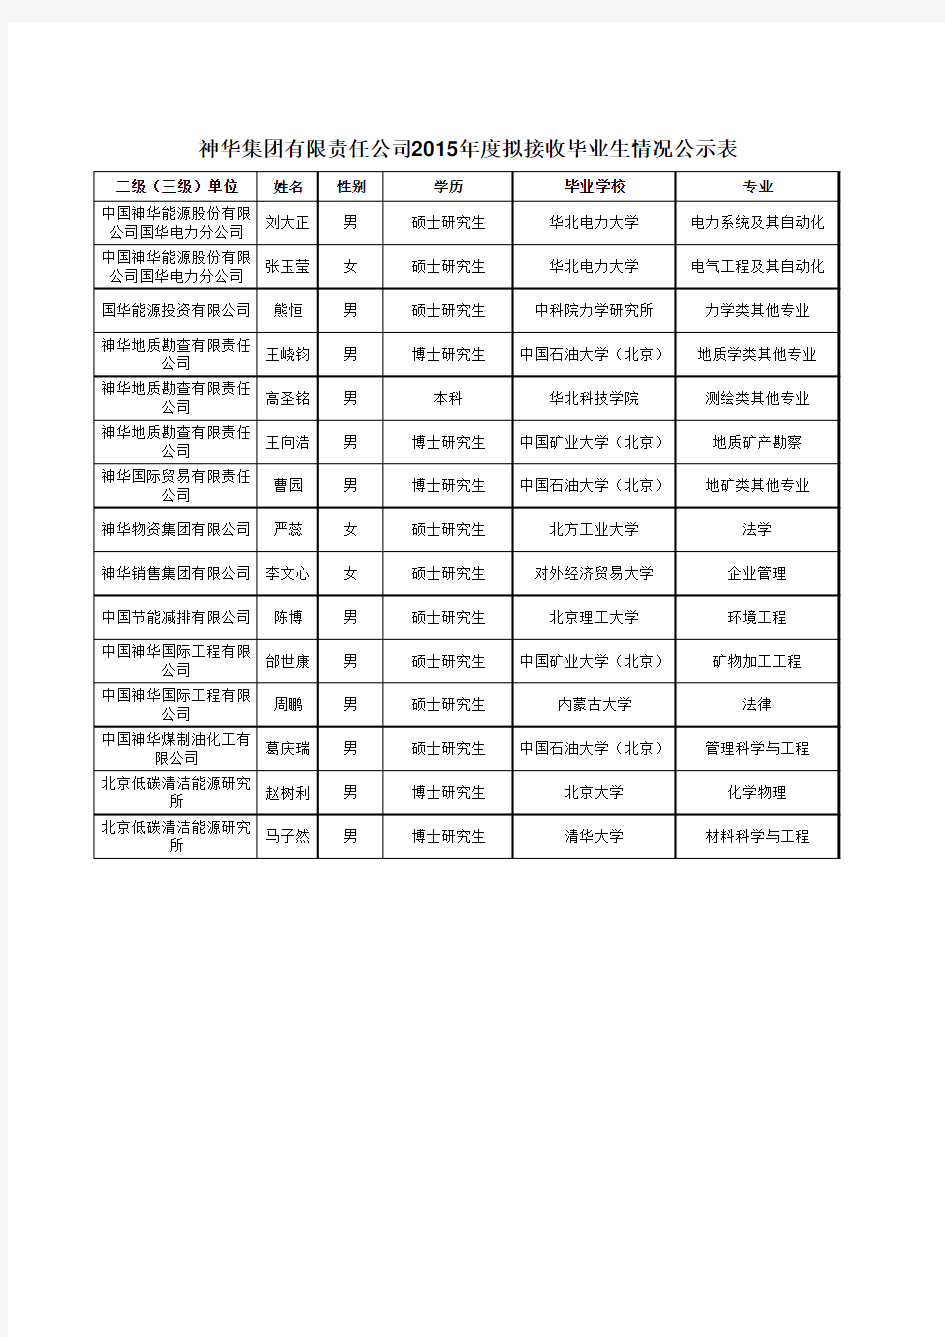 神华集团有限责任公司2015年度拟接收毕业生情况公示表 (1)